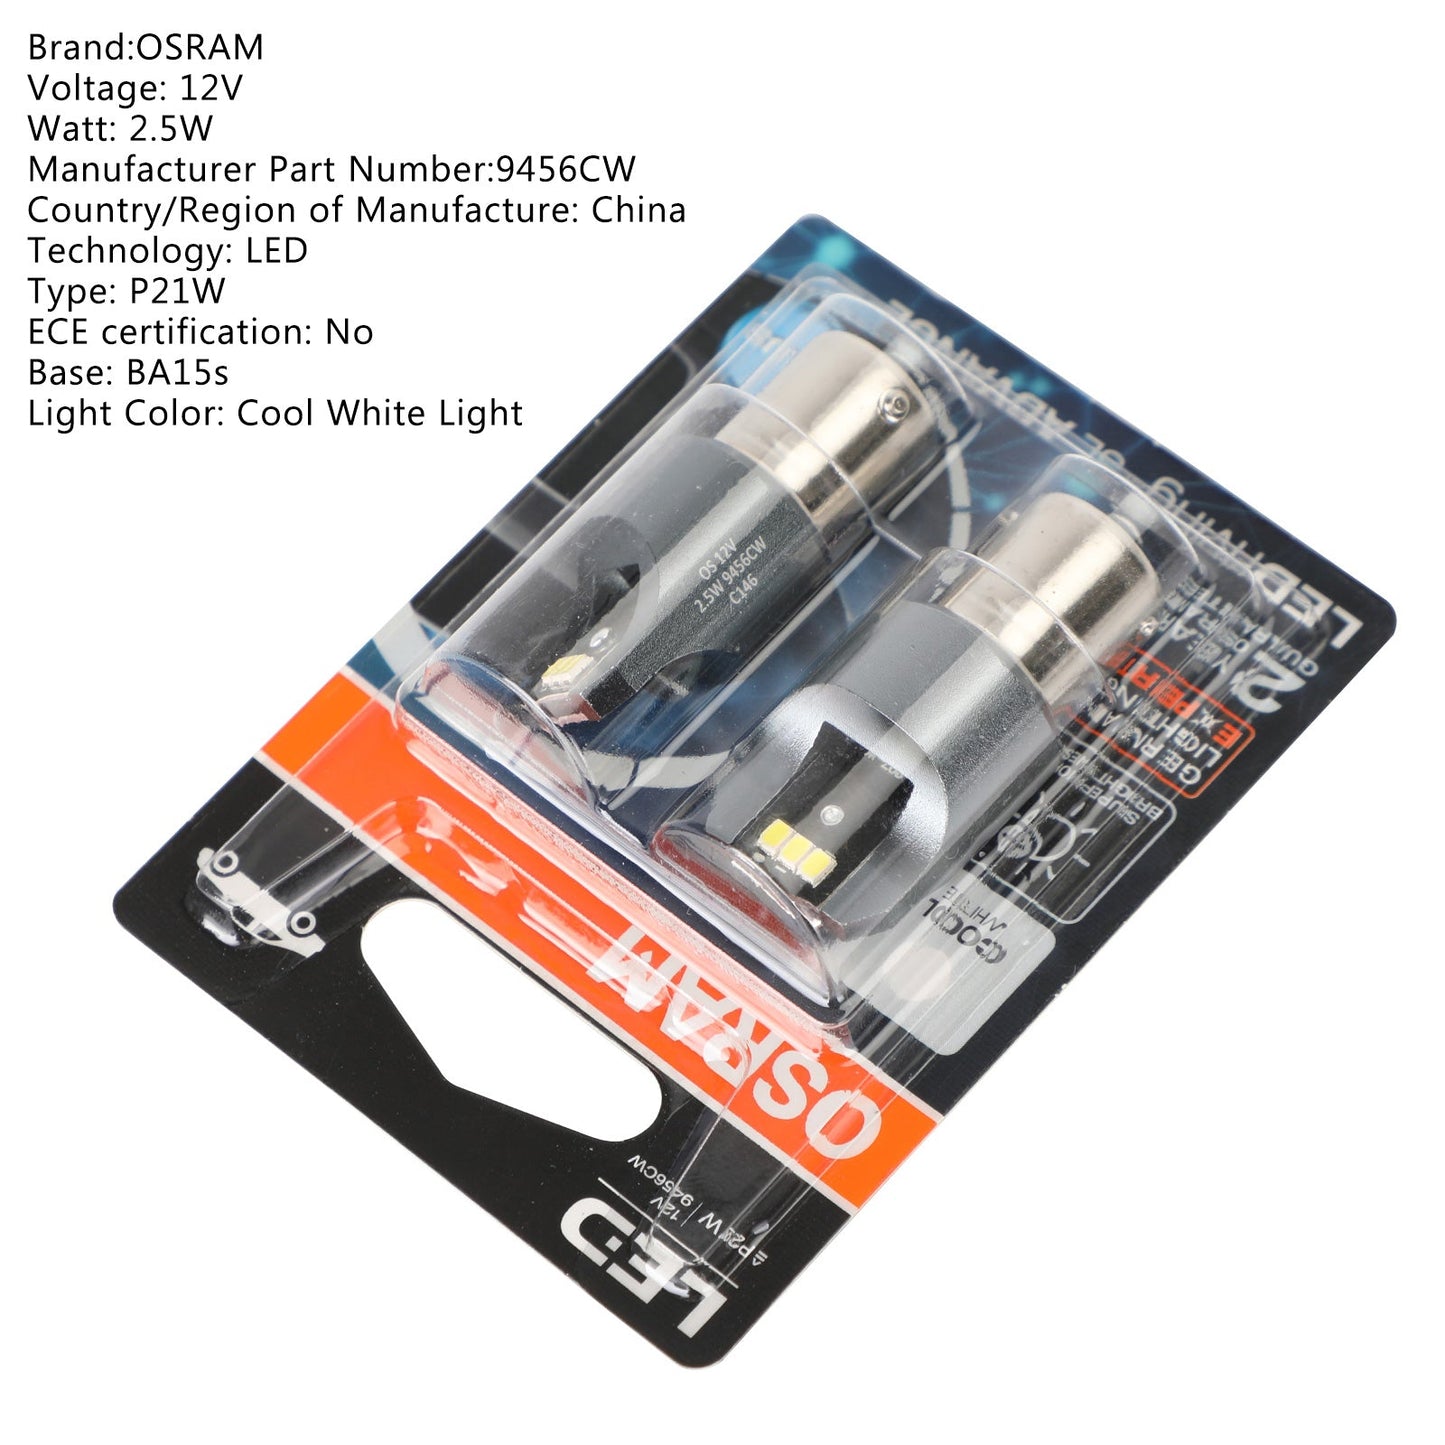 2x For OSRAM 9456CW Car Auxiliary Bulbs LED P21W 12V2.5W BA15s